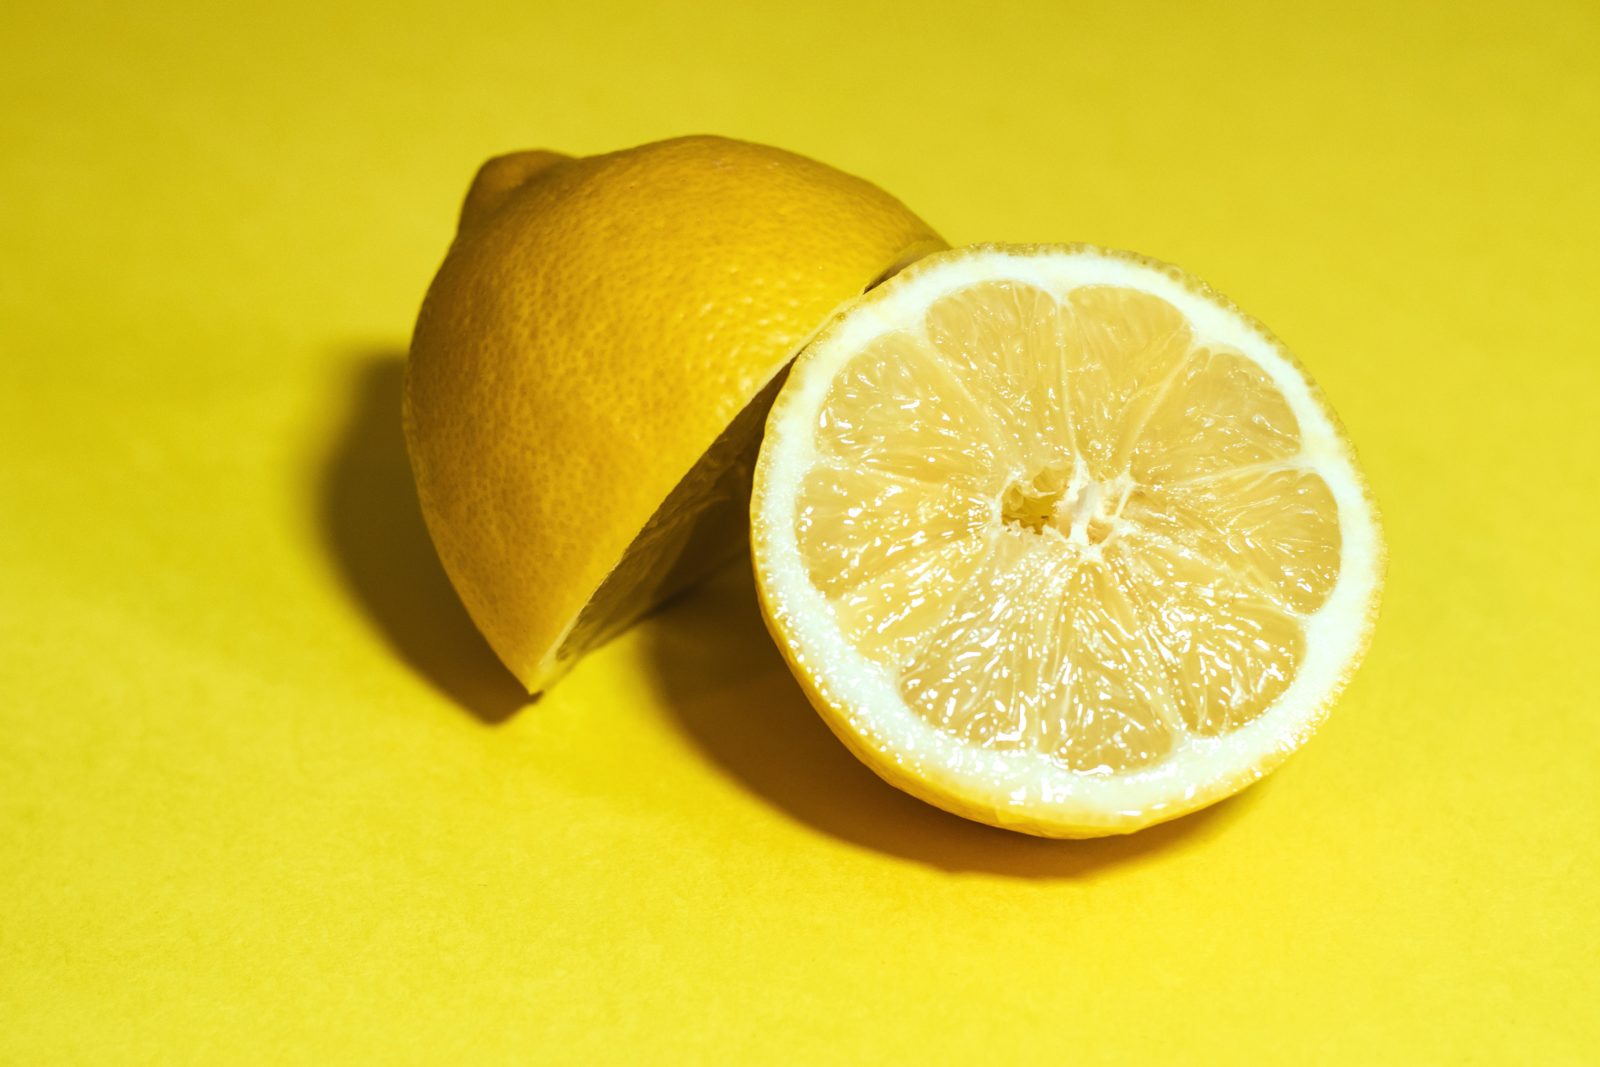 Le citron, remède naturel efficace pour soulager les piqûres de moustiques.